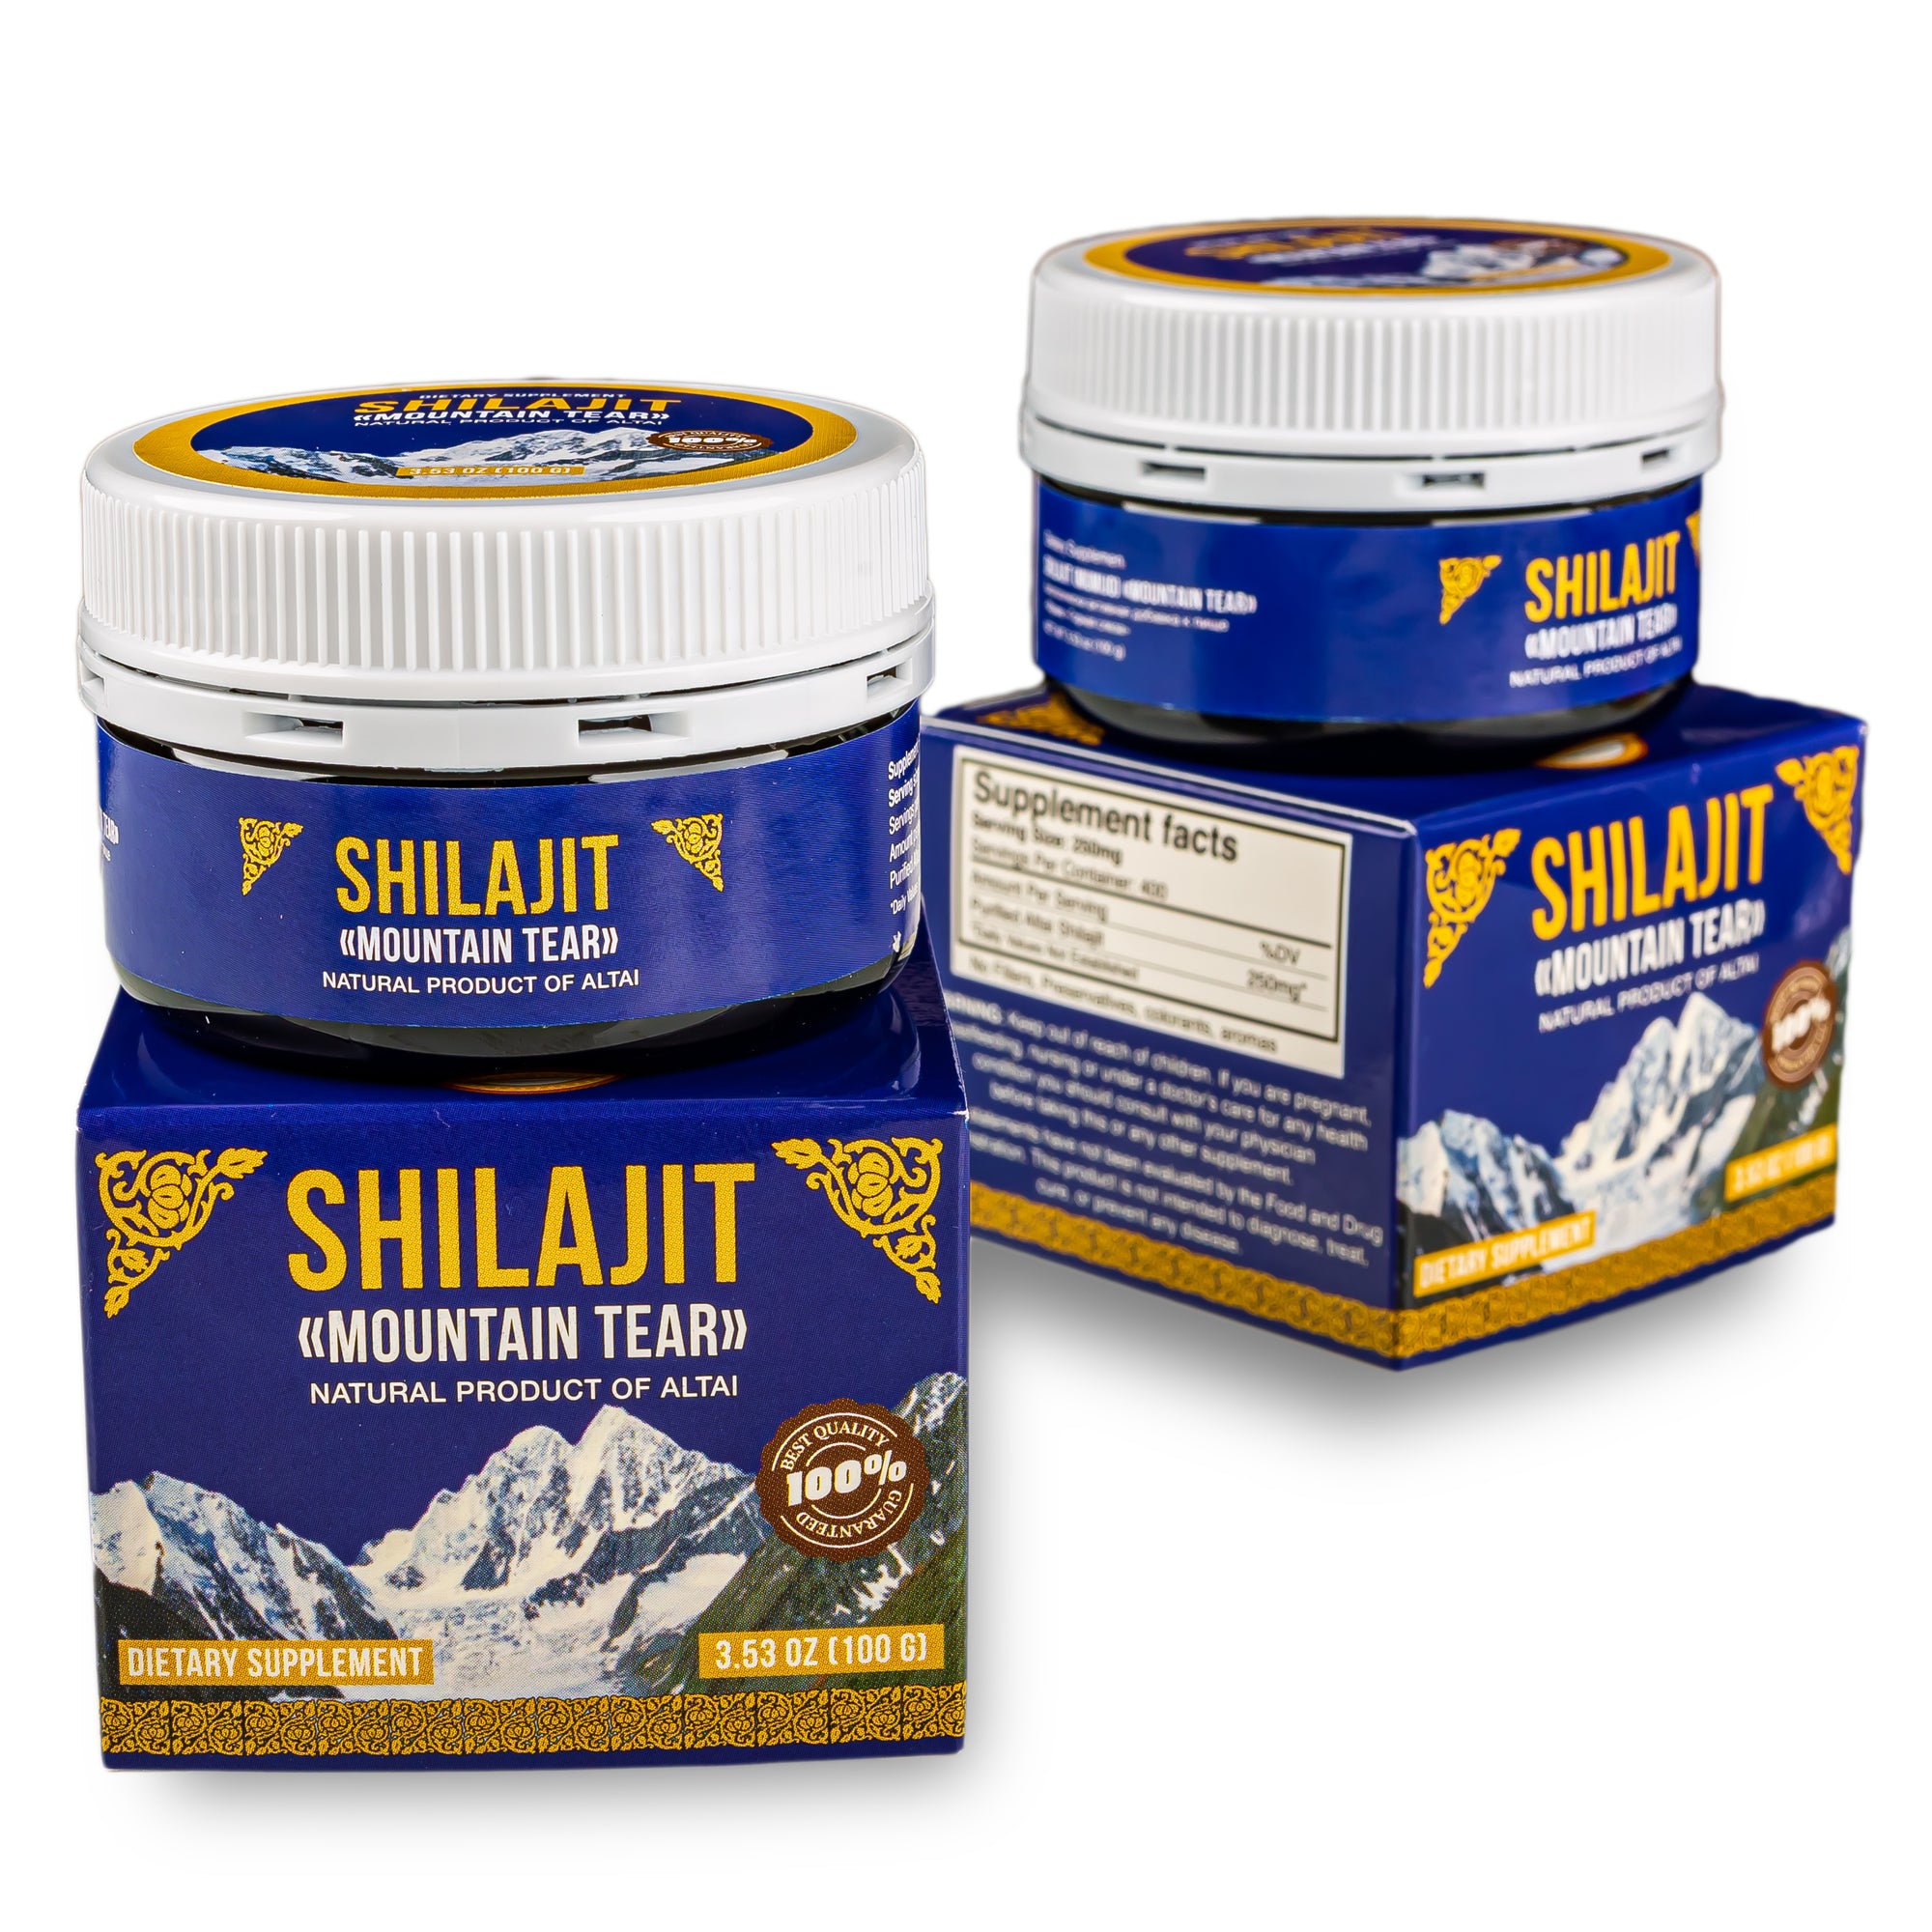 Why Shilajit is good for strengthening bones?